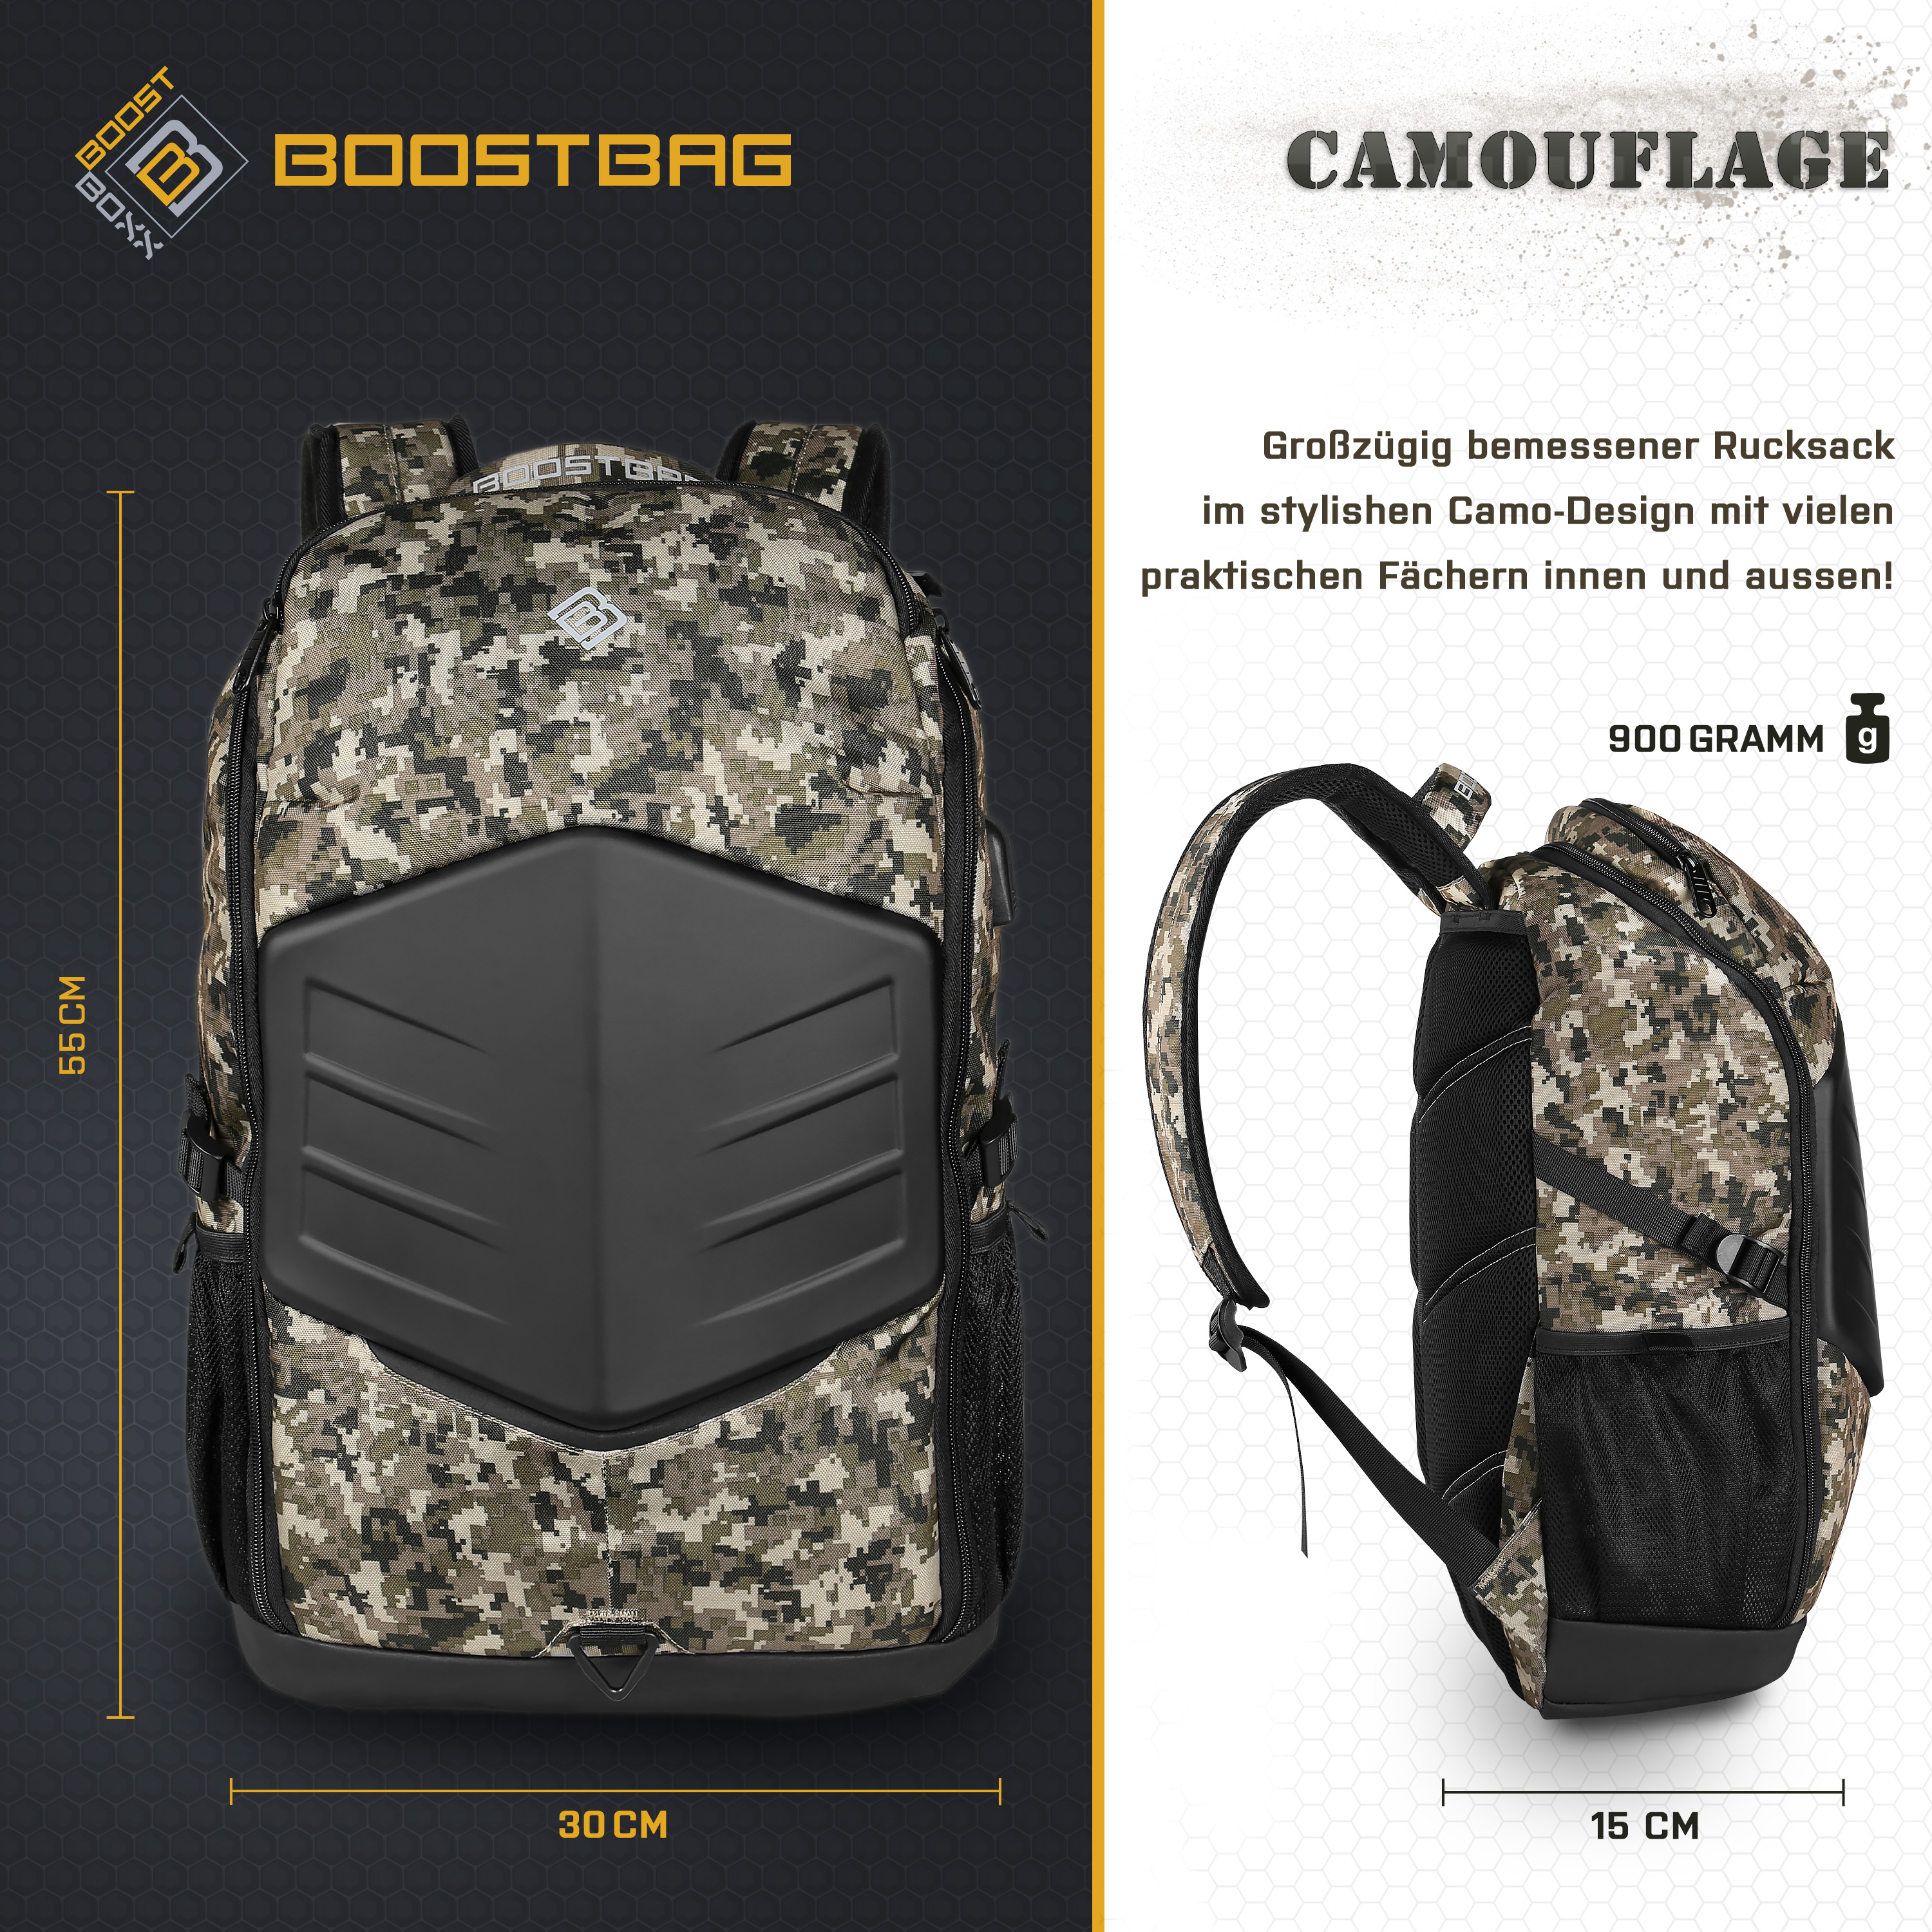 BOOSTBOXX BoostBag Camouflage Materialmix, für Rucksack Universal army Notebook-Rucksack